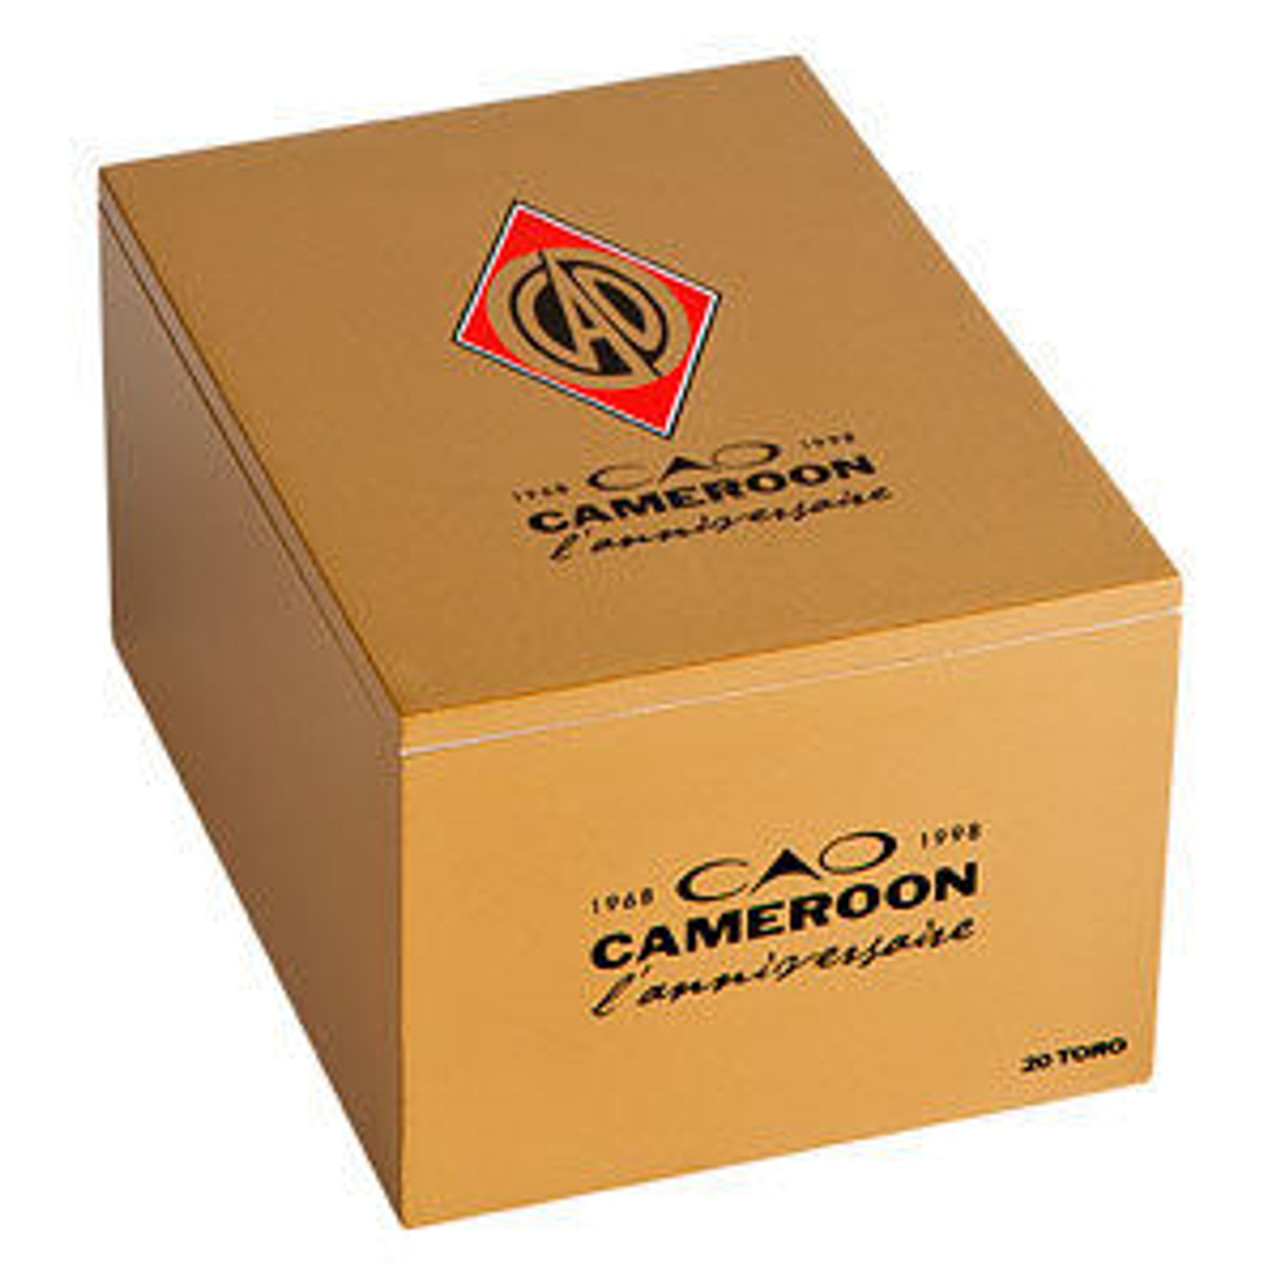 CAO Cameroon Robusto Cigars - 5 x 50 (Box of 20) *Box